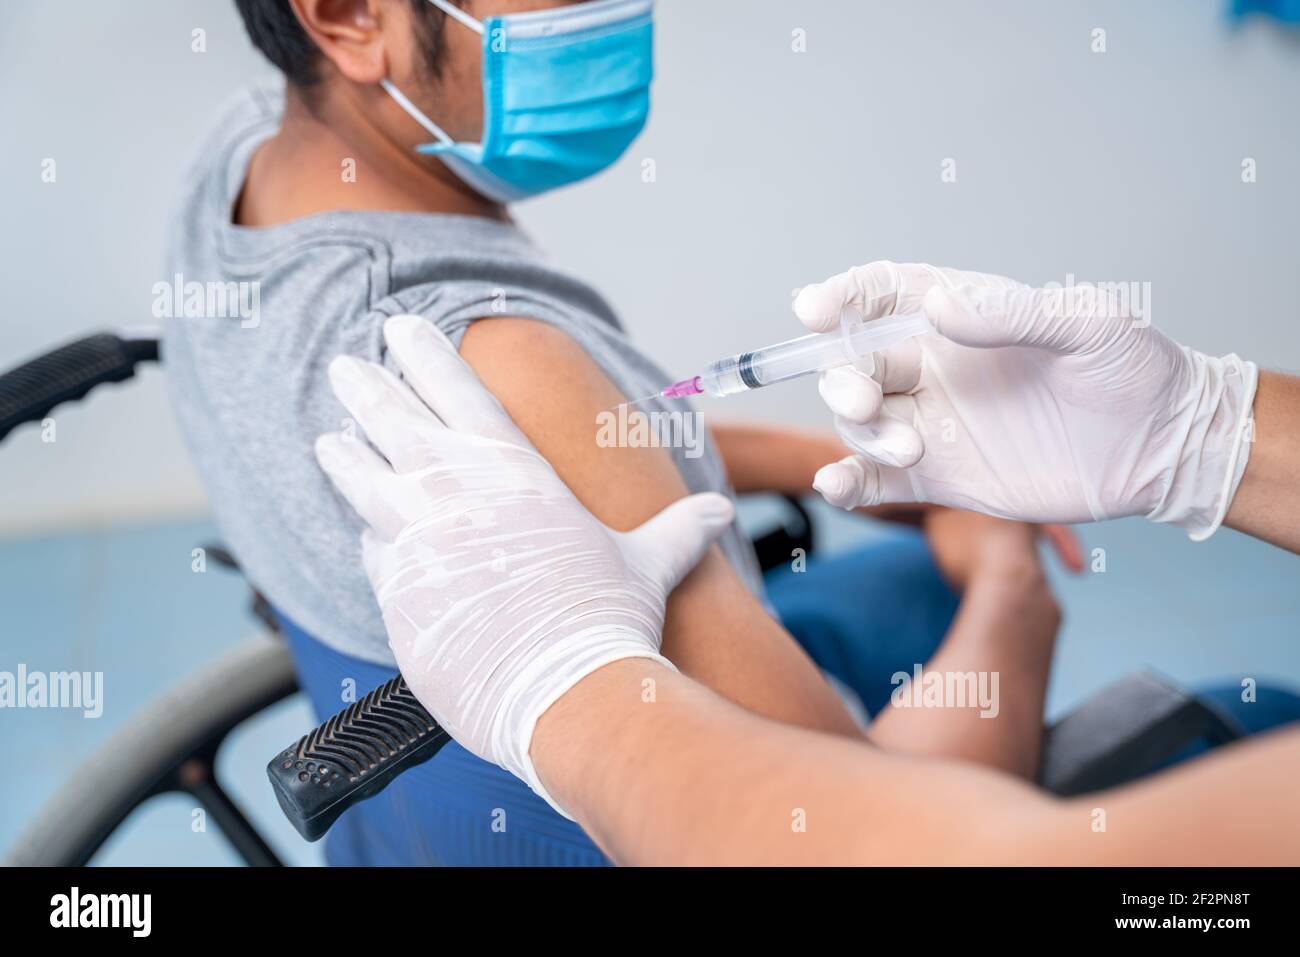 Arzt, der eine Impfung in der Schulter des Patienten behinderten Person, Grippe-Impfung Injektion am Arm, Coronavirus, covid-19 Impfstoff Krankheit vorbereiten Stockfoto